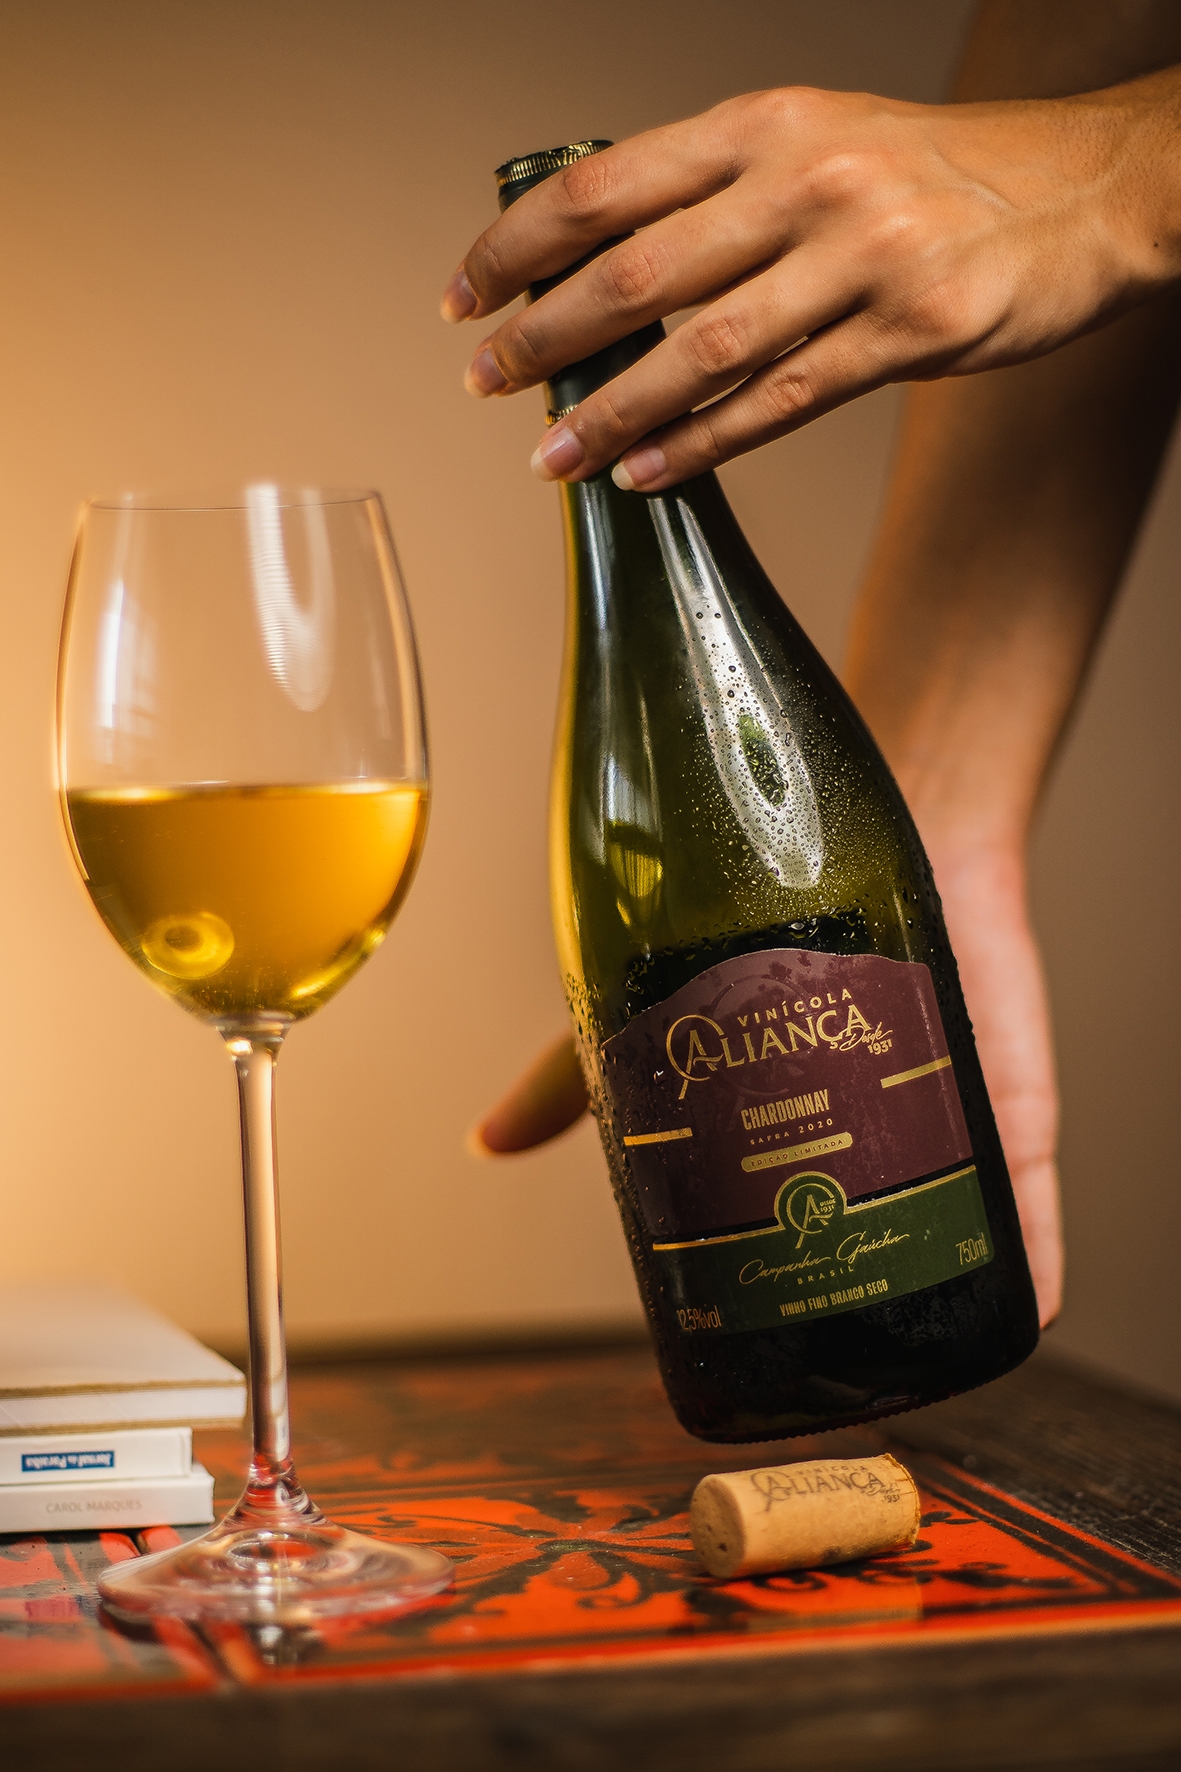 Aliança Chardonnay. - Marcus Mendes/Divulgação